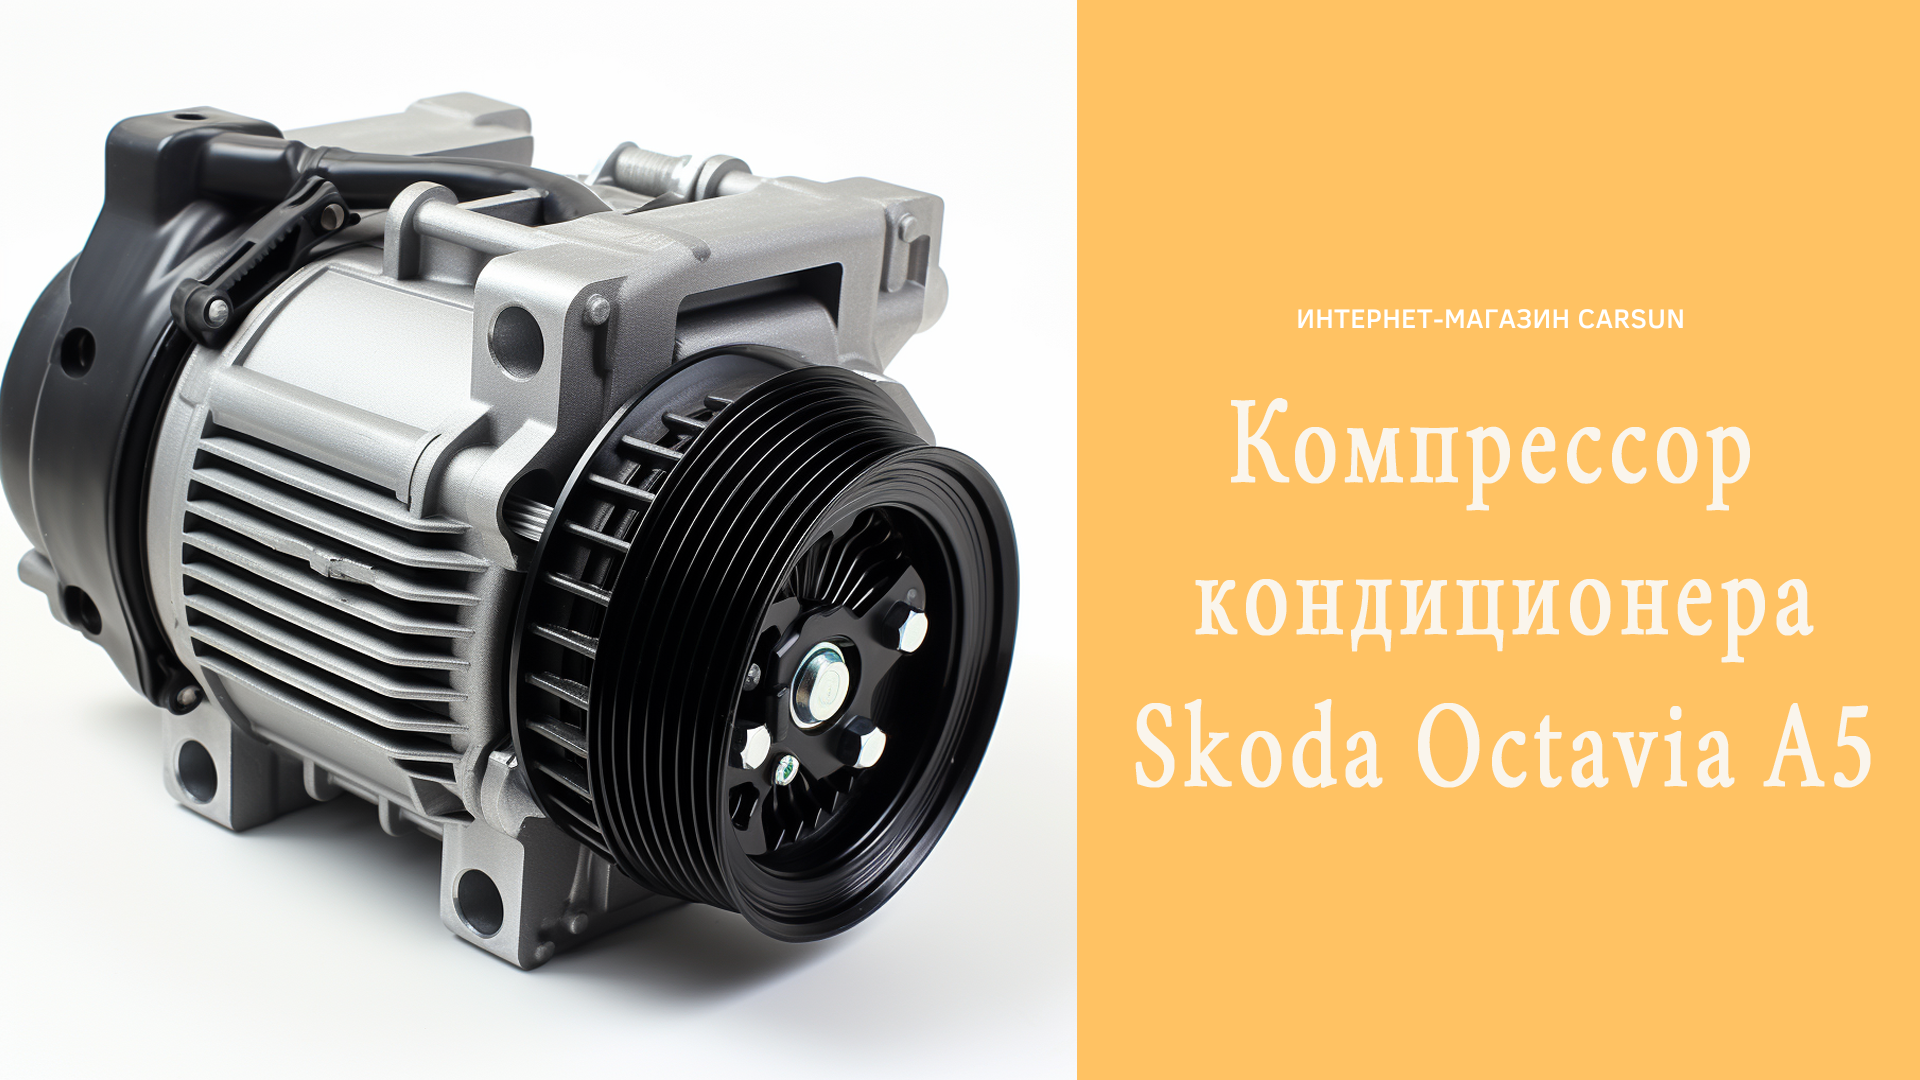 компрессор кондиционера skoda octavia a5, компрессор skoda, skoda octavia a5 компрессор кондиционера